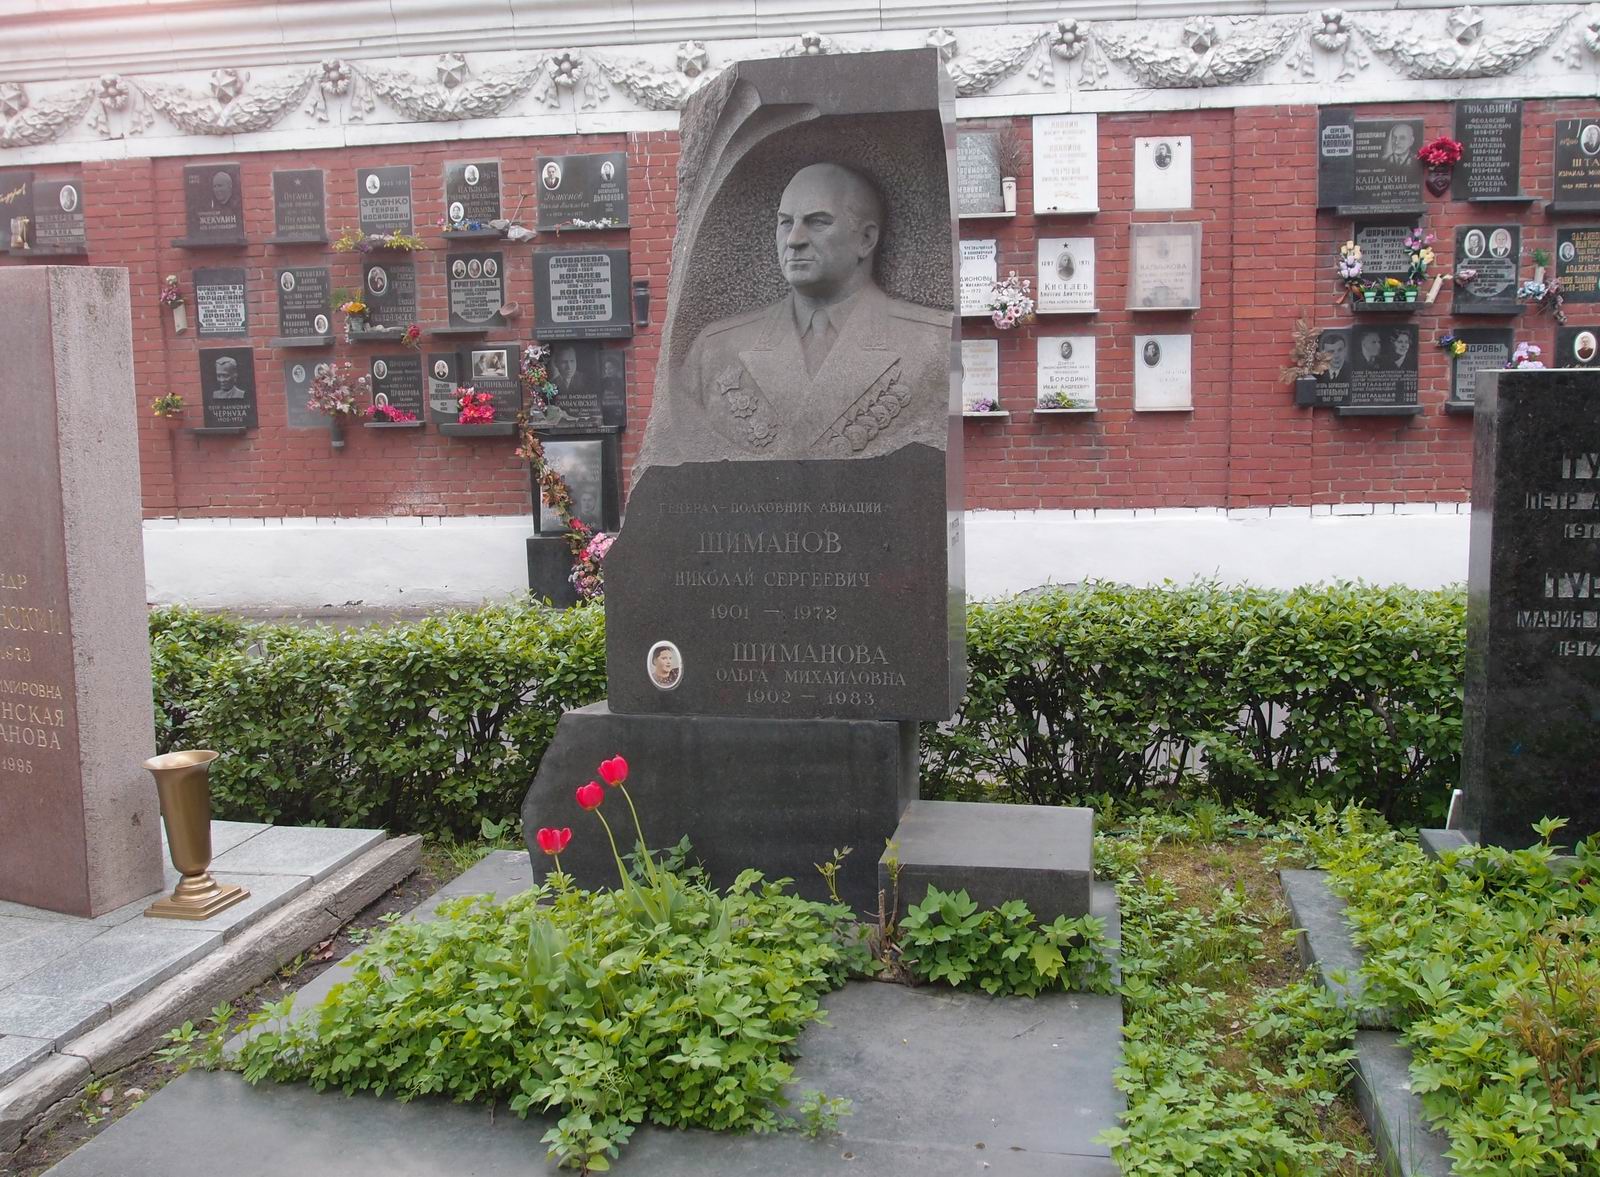 Памятник на могиле Шиманова Н.С. (1901-1972), на Новодевичьем кладбище (7-21-5). Нажмите левую кнопку мыши чтобы увидеть фрагмент памятника.